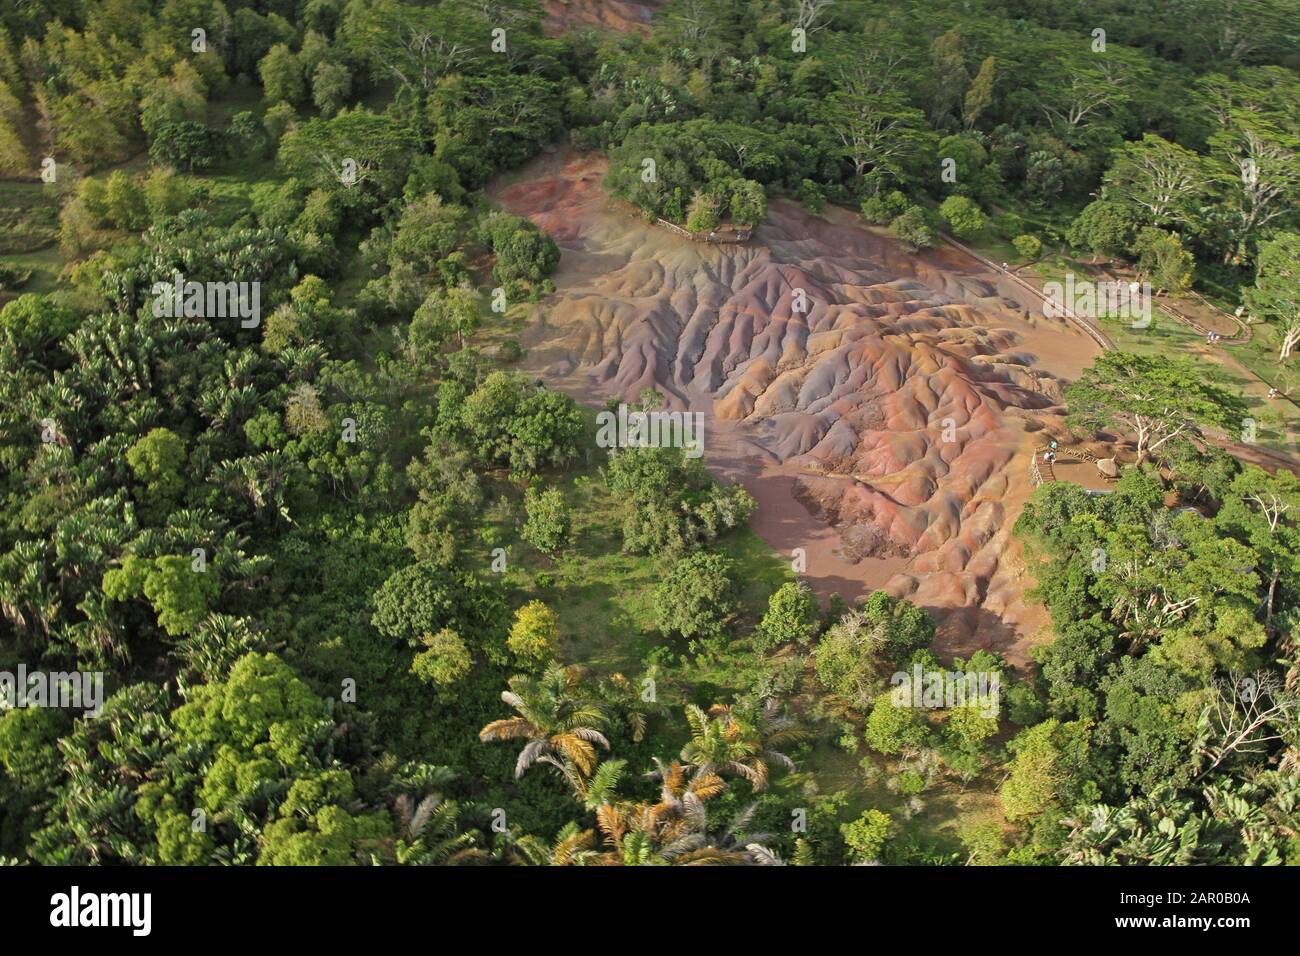 Formazione Geologica Di Sette Terre Colorate, Pianura Di Chamarel, Quartiere Riviere Noire, Mauritius Sud-Occidentale. Foto Stock